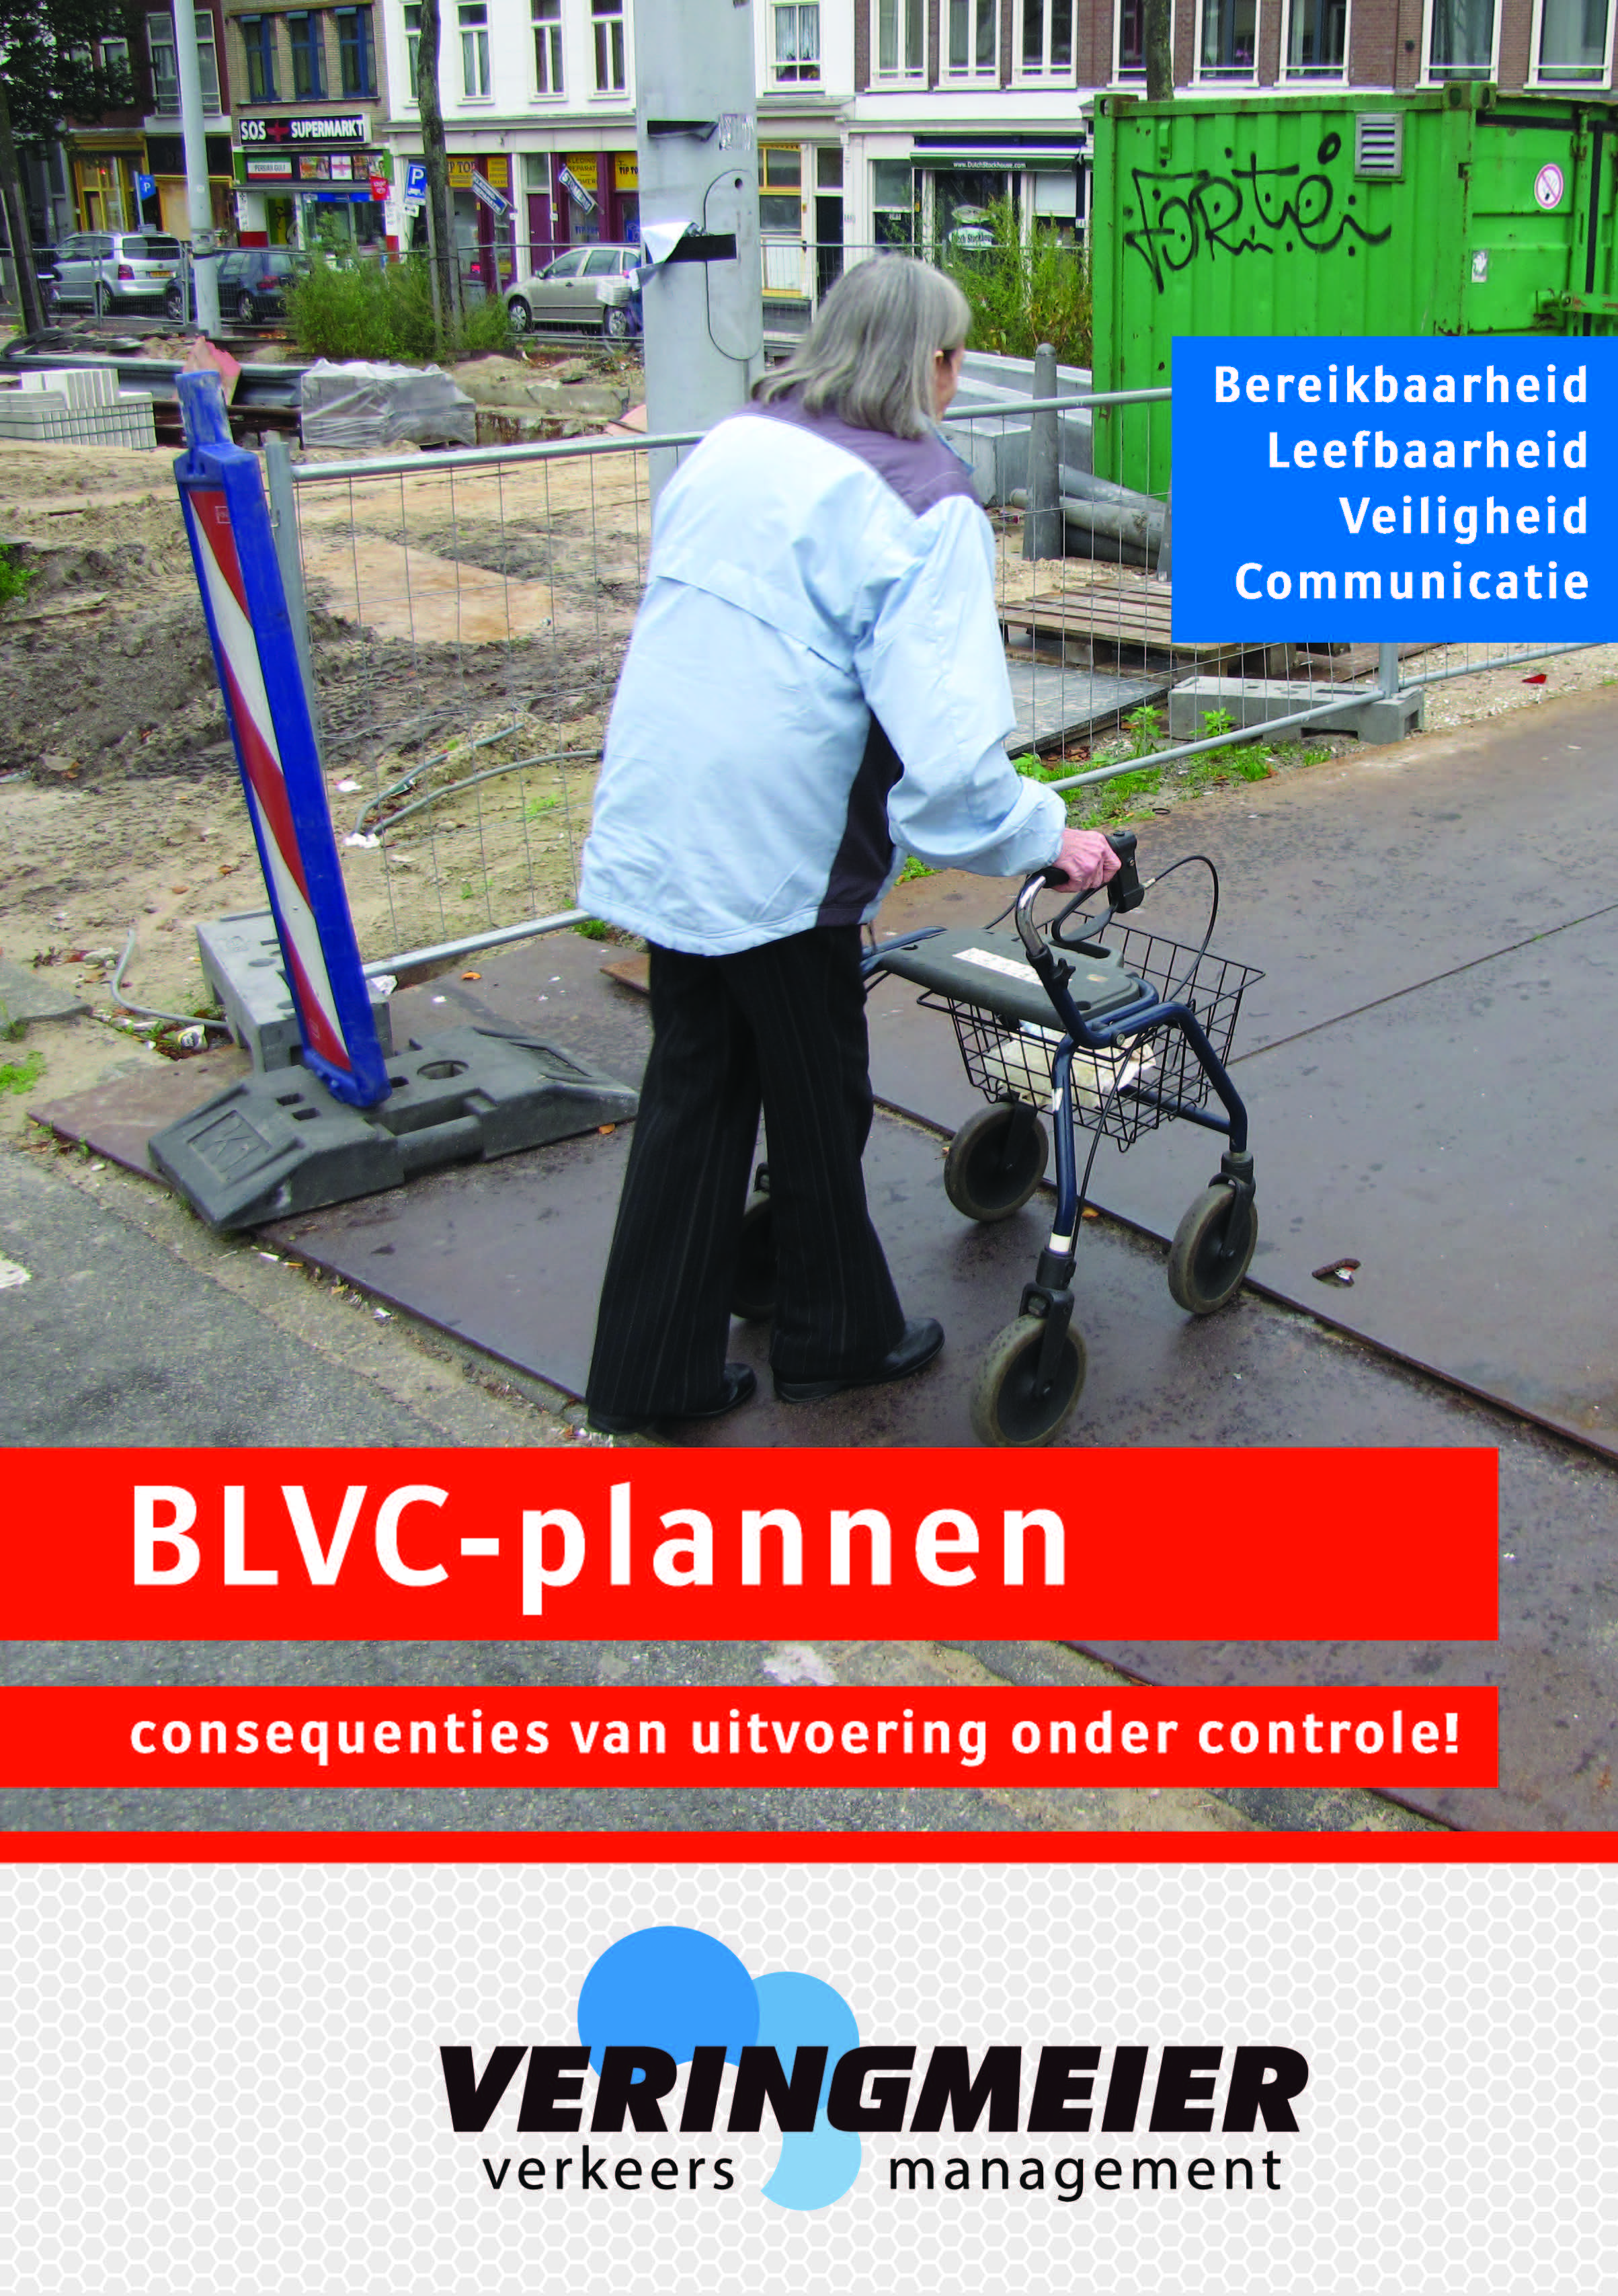 BLVC-plannen